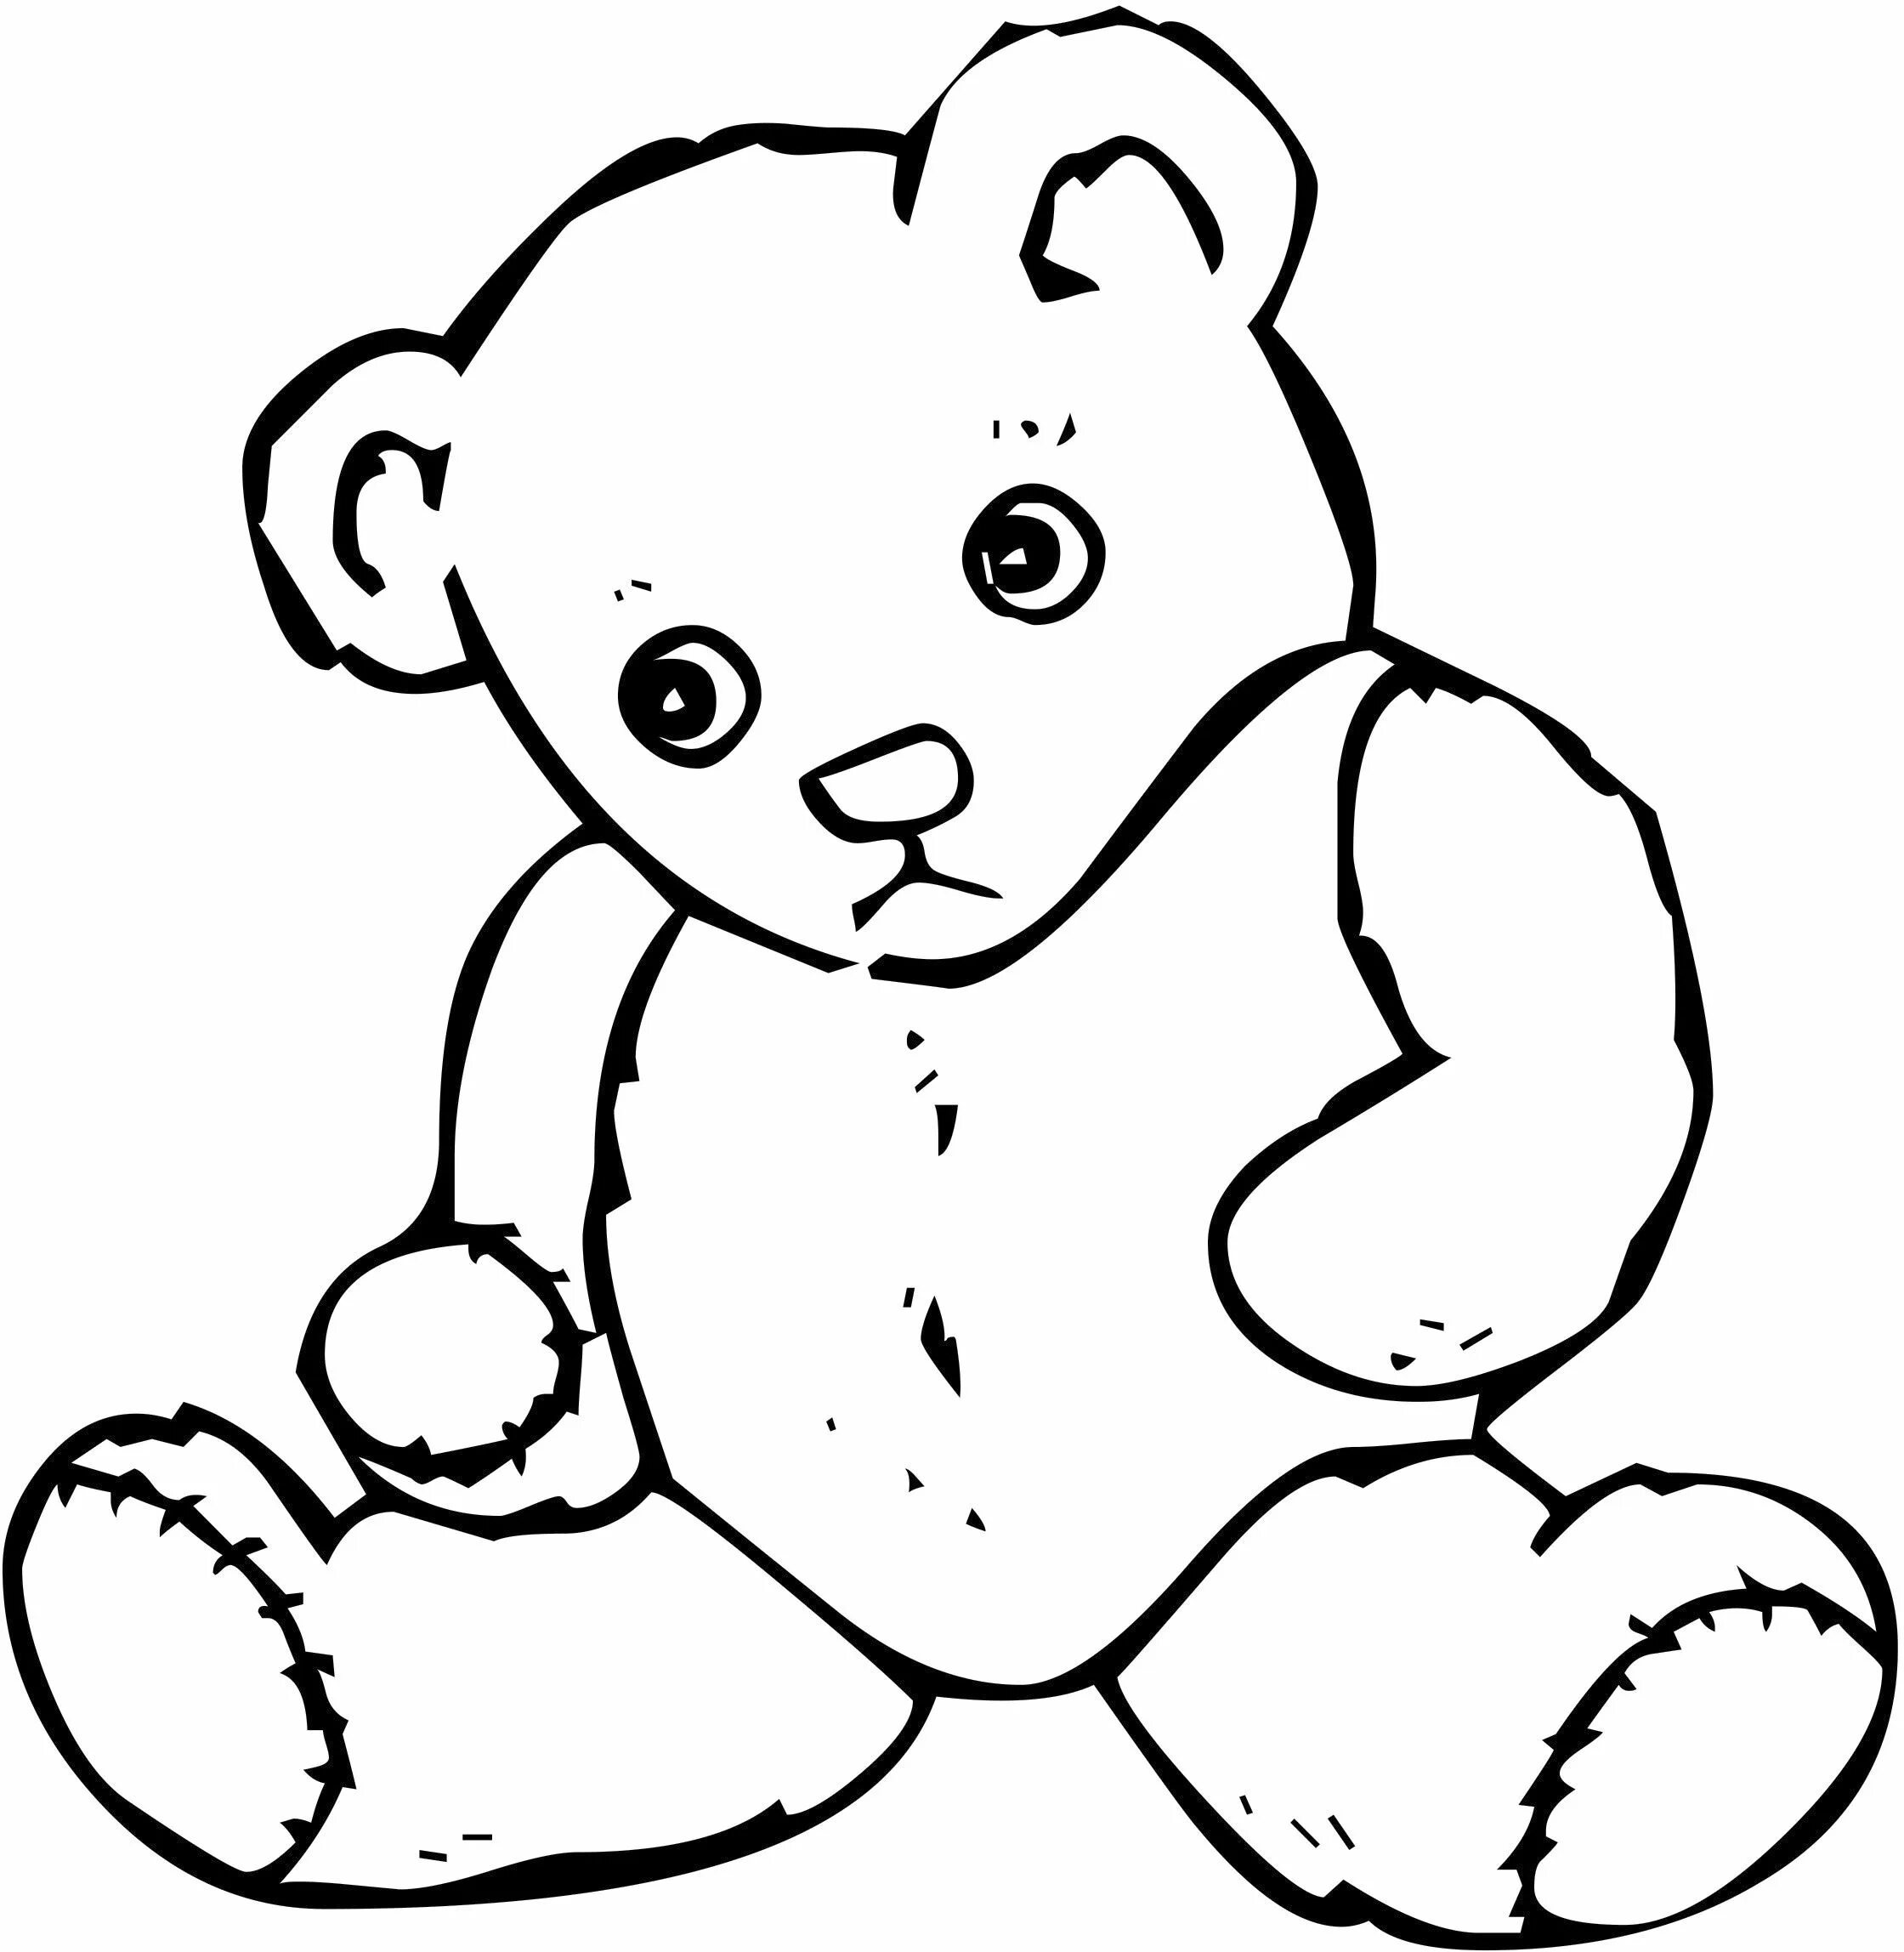 Раскраска. Медвежонок. Мишка раскраска для детей. Медведь раскраска для детей. Медвежонок раскраска для малышей. Раскраски для детей 3 года мишки